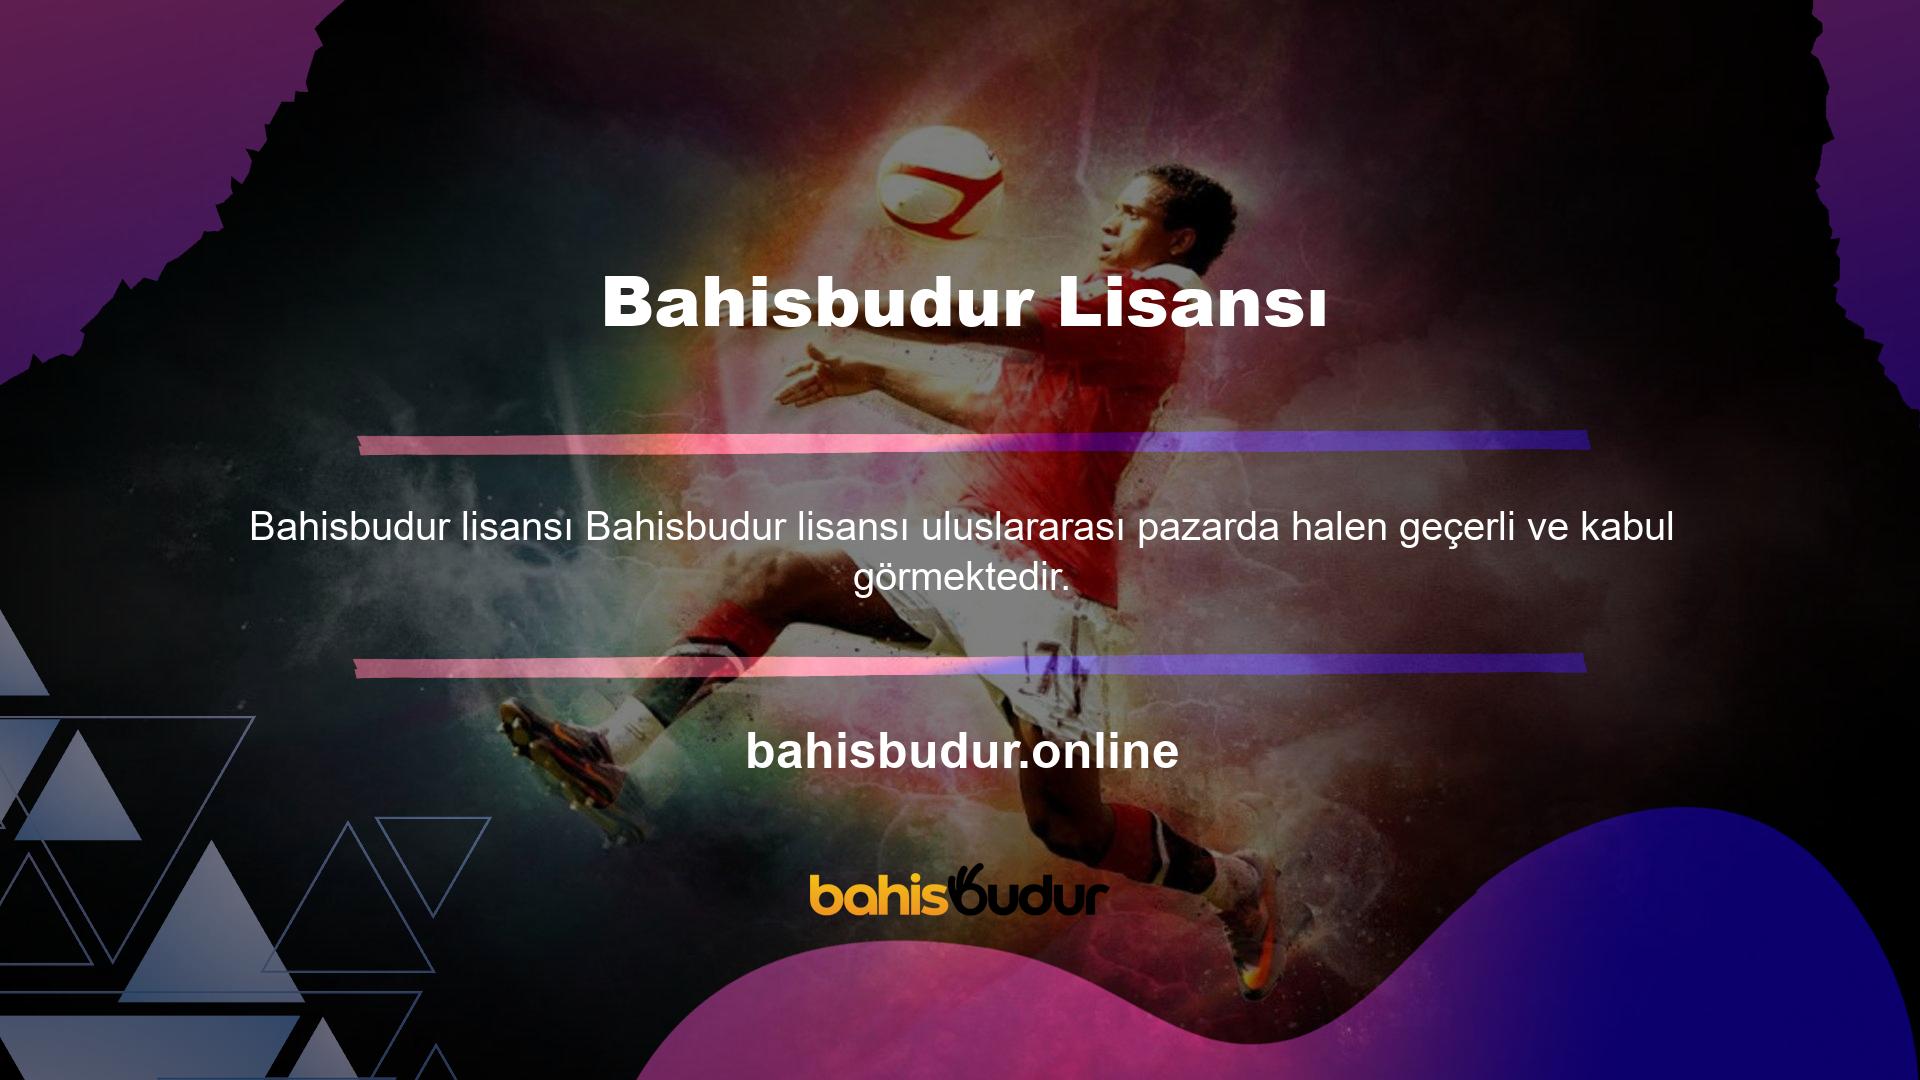 Bahisbudur lisanslı bir web sitesidir ve lisans, şirketin web sitesi aracılığıyla uzaktan çevrimiçi bahis hizmetleri veya e-bahis sağlamaya yetkili olduğunu gösterir